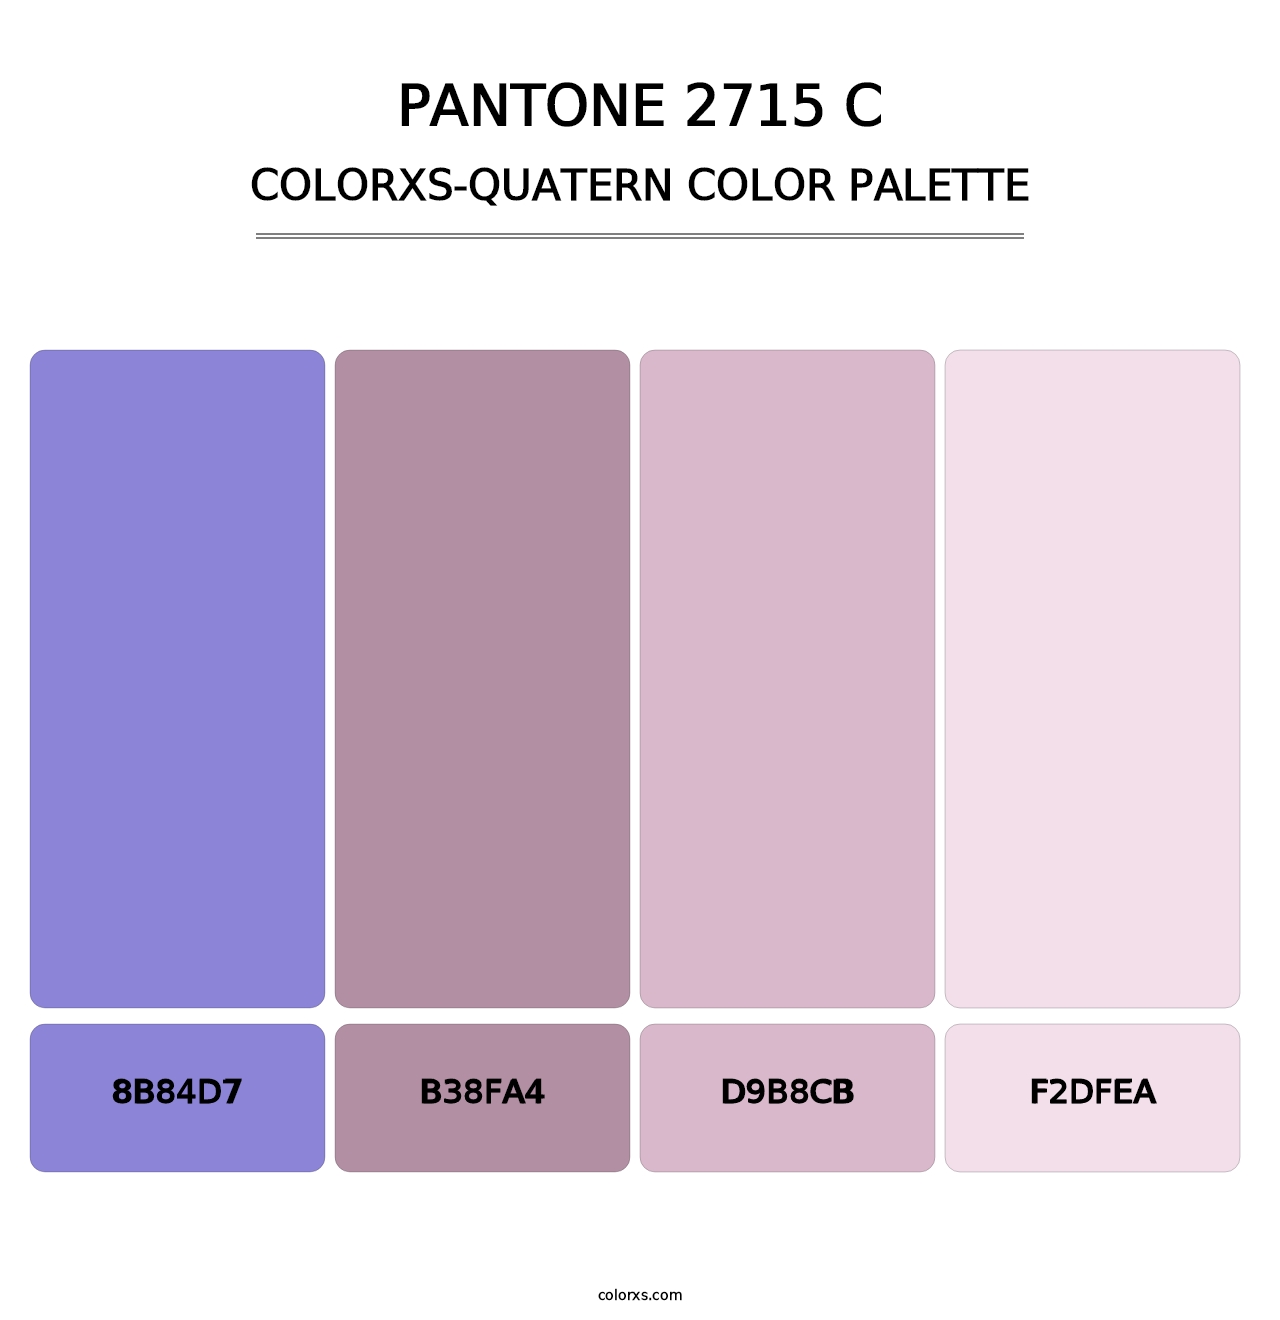 PANTONE 2715 C - Colorxs Quatern Palette